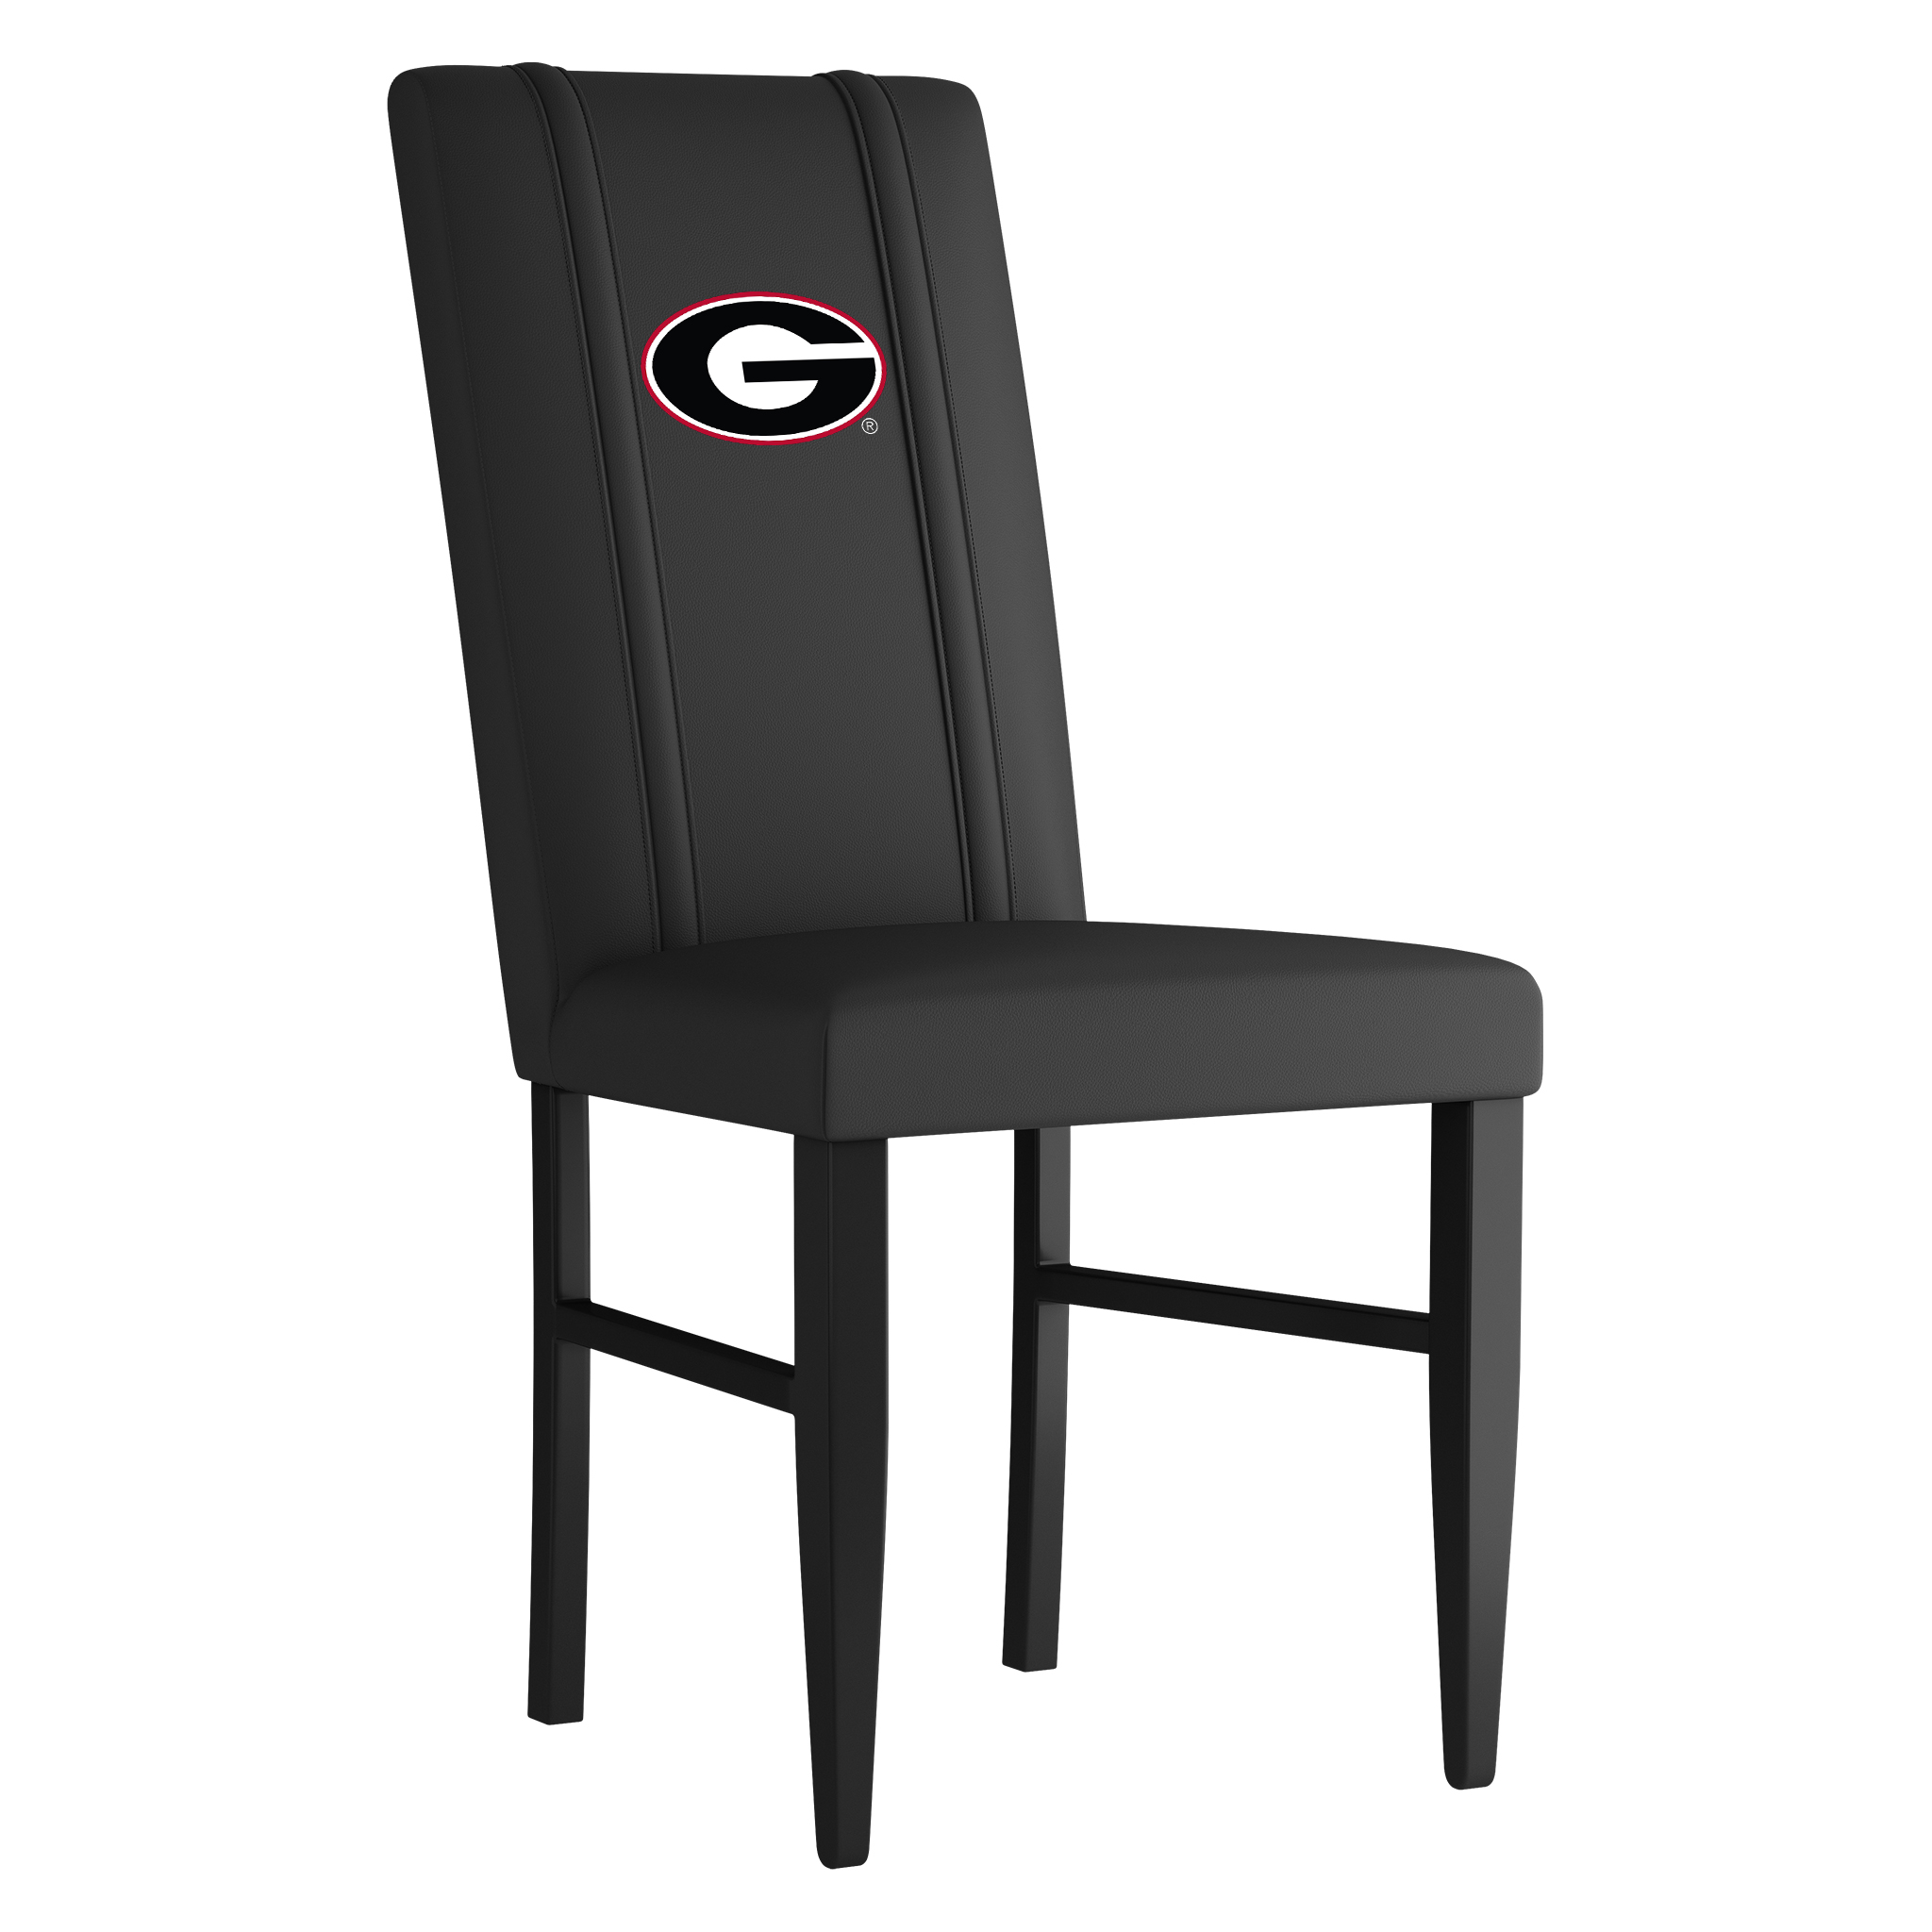 Georgia Bulldogs Side Chair 2000 With Georgia Bulldogs Logo